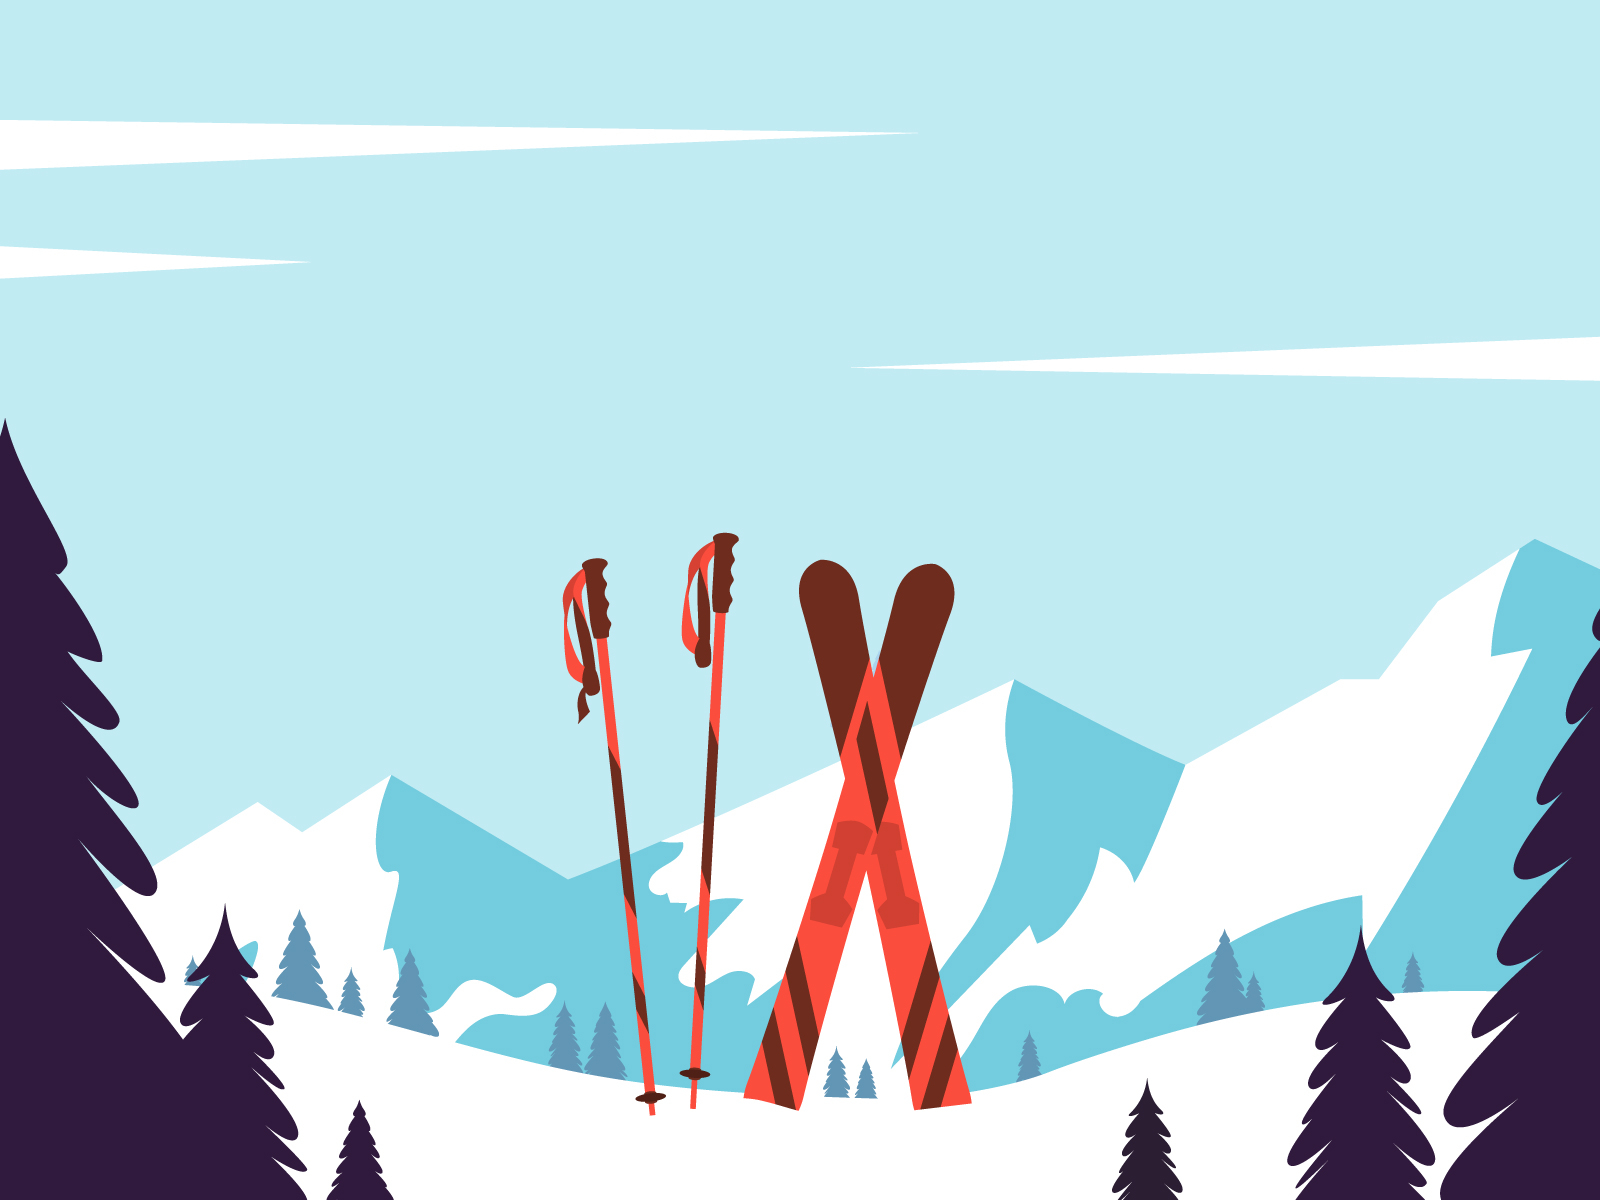 Ski resort by yabluko_draws on Dribbble